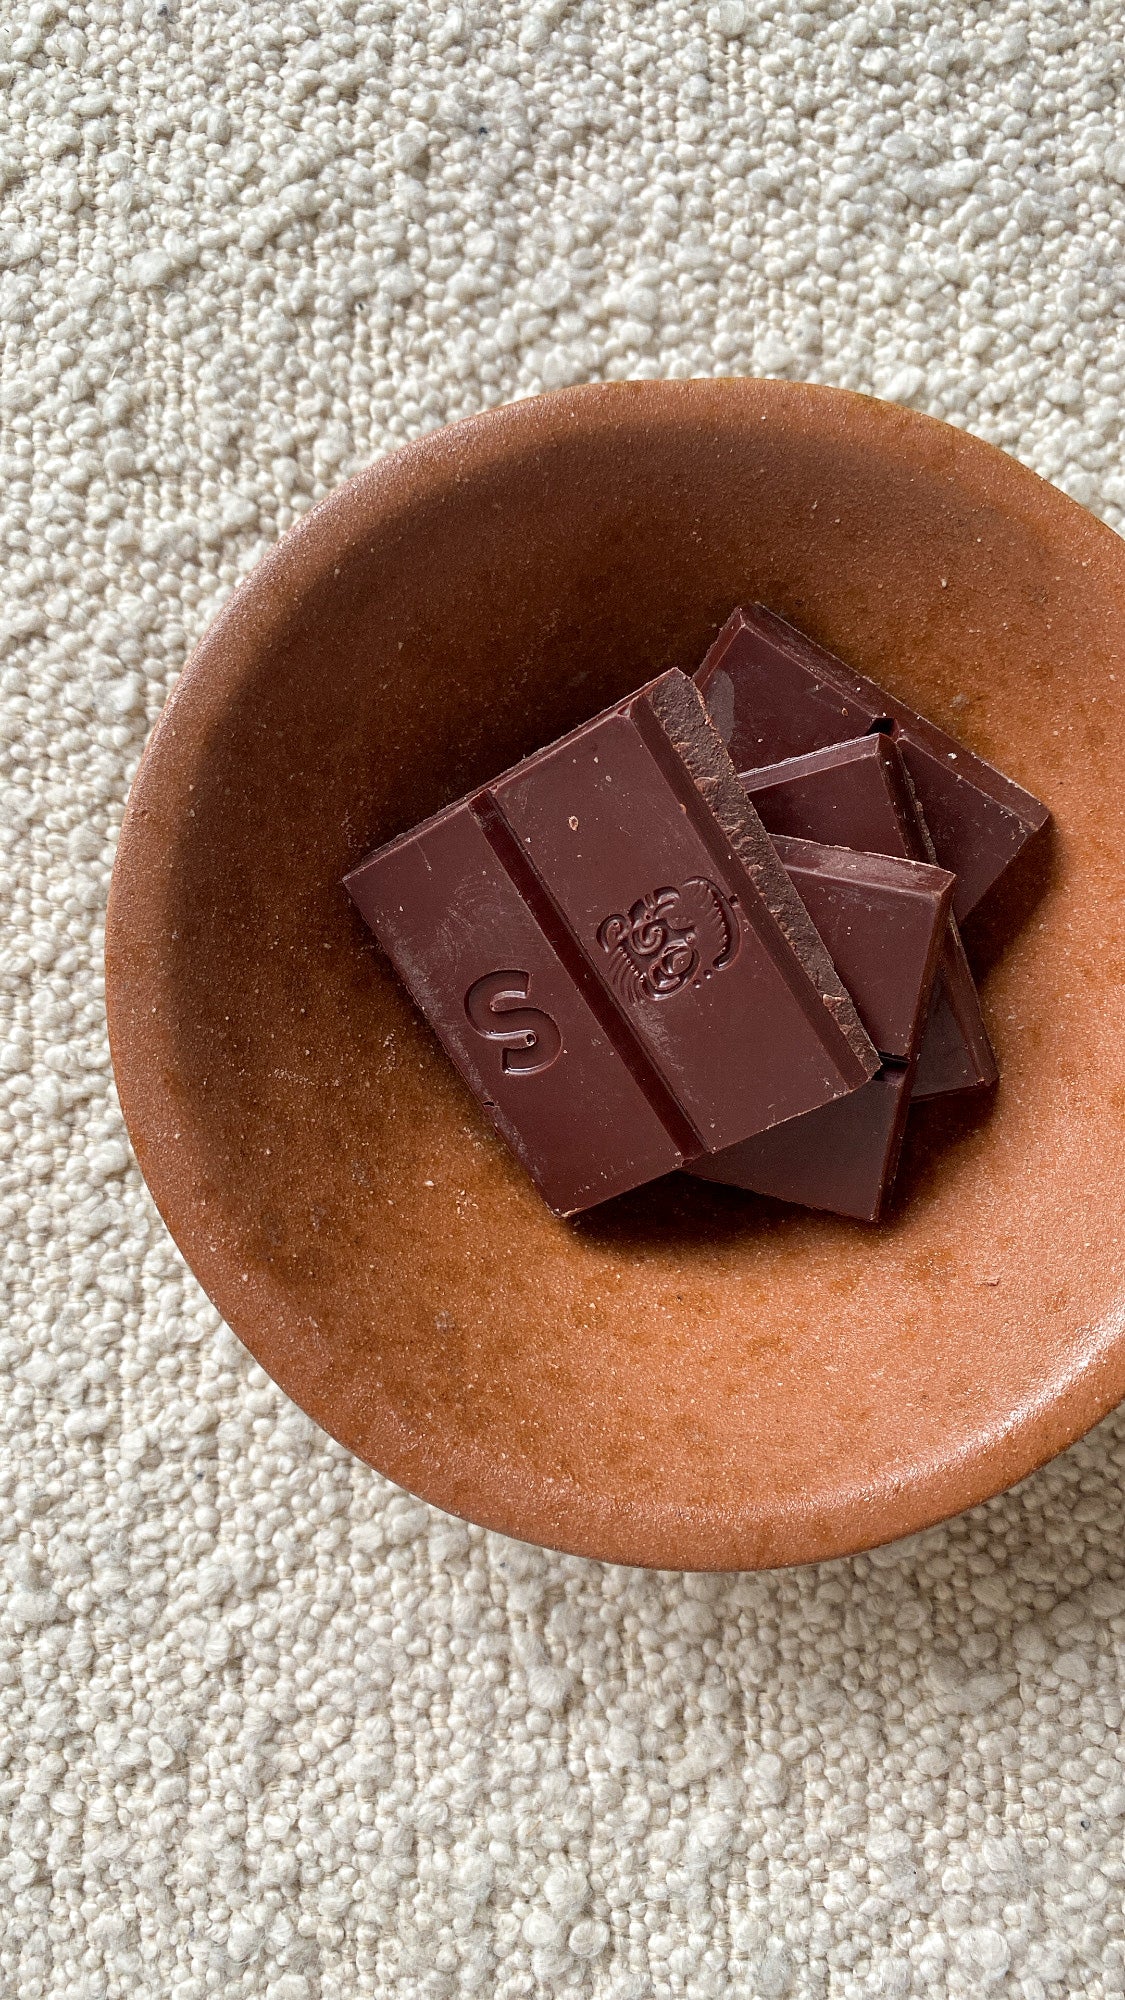 Chocosol Chocolate Bars | Eco-source Chocolate